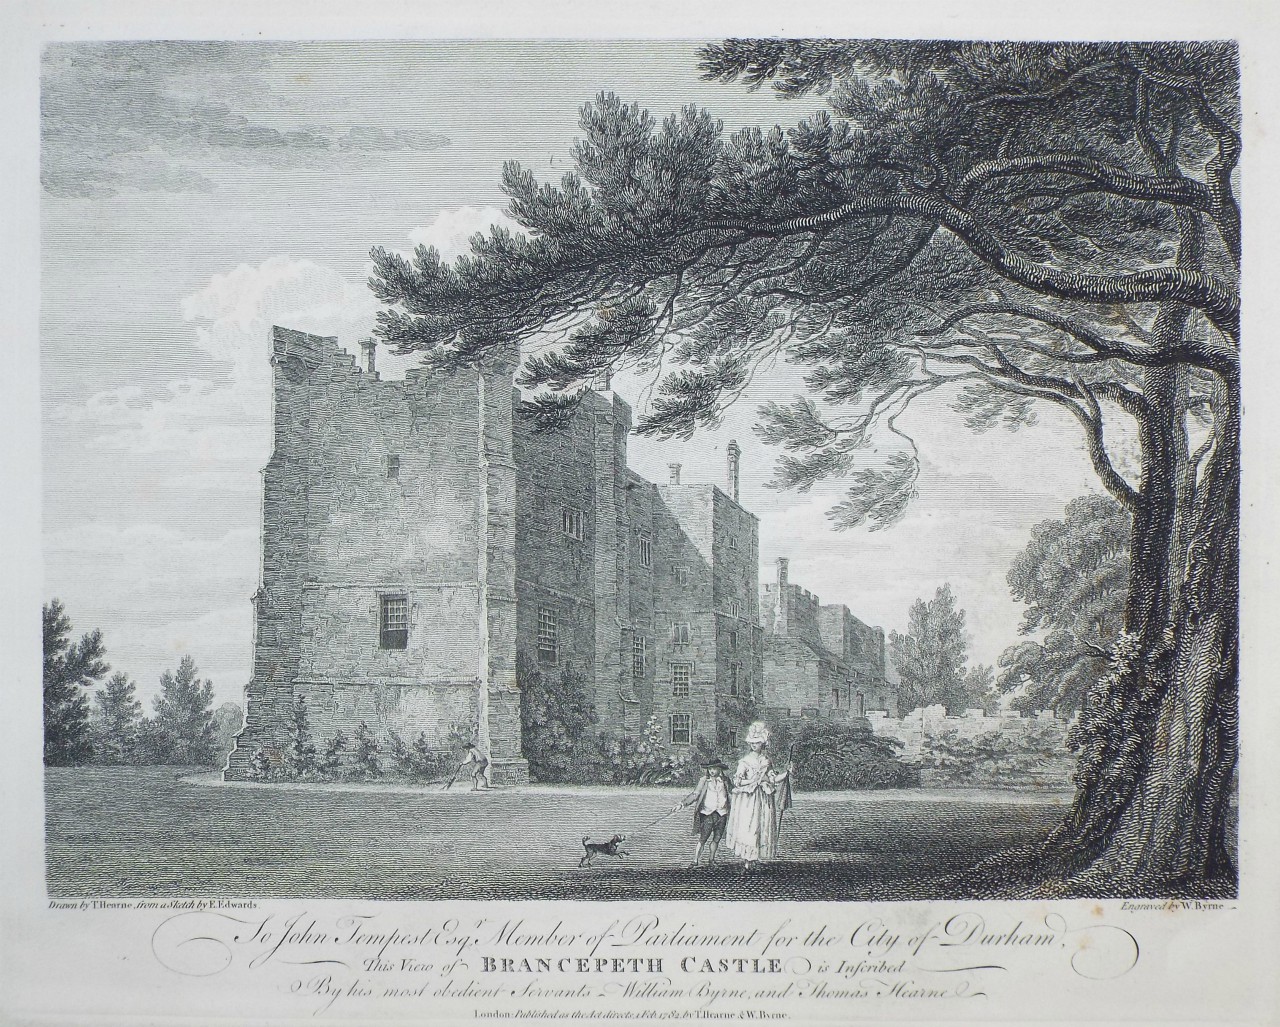 Print - Brancepeth Castle - Byrne